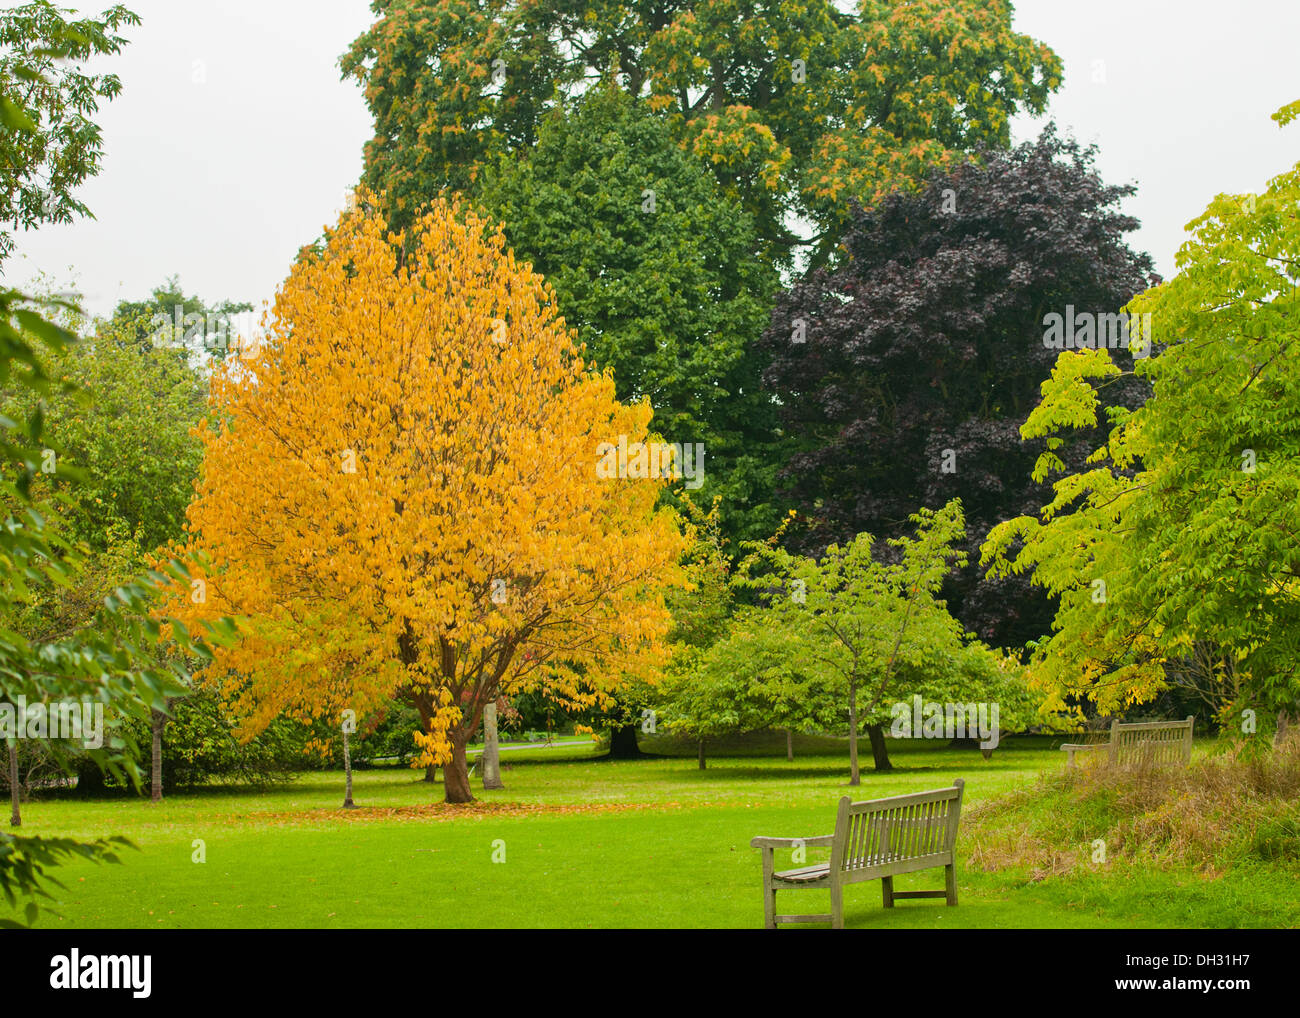 Anfang Herbst Bäume mit gelben; Kupfer und Grün in einer ruhigen Parklandschaft mit einer Bank Stockfoto